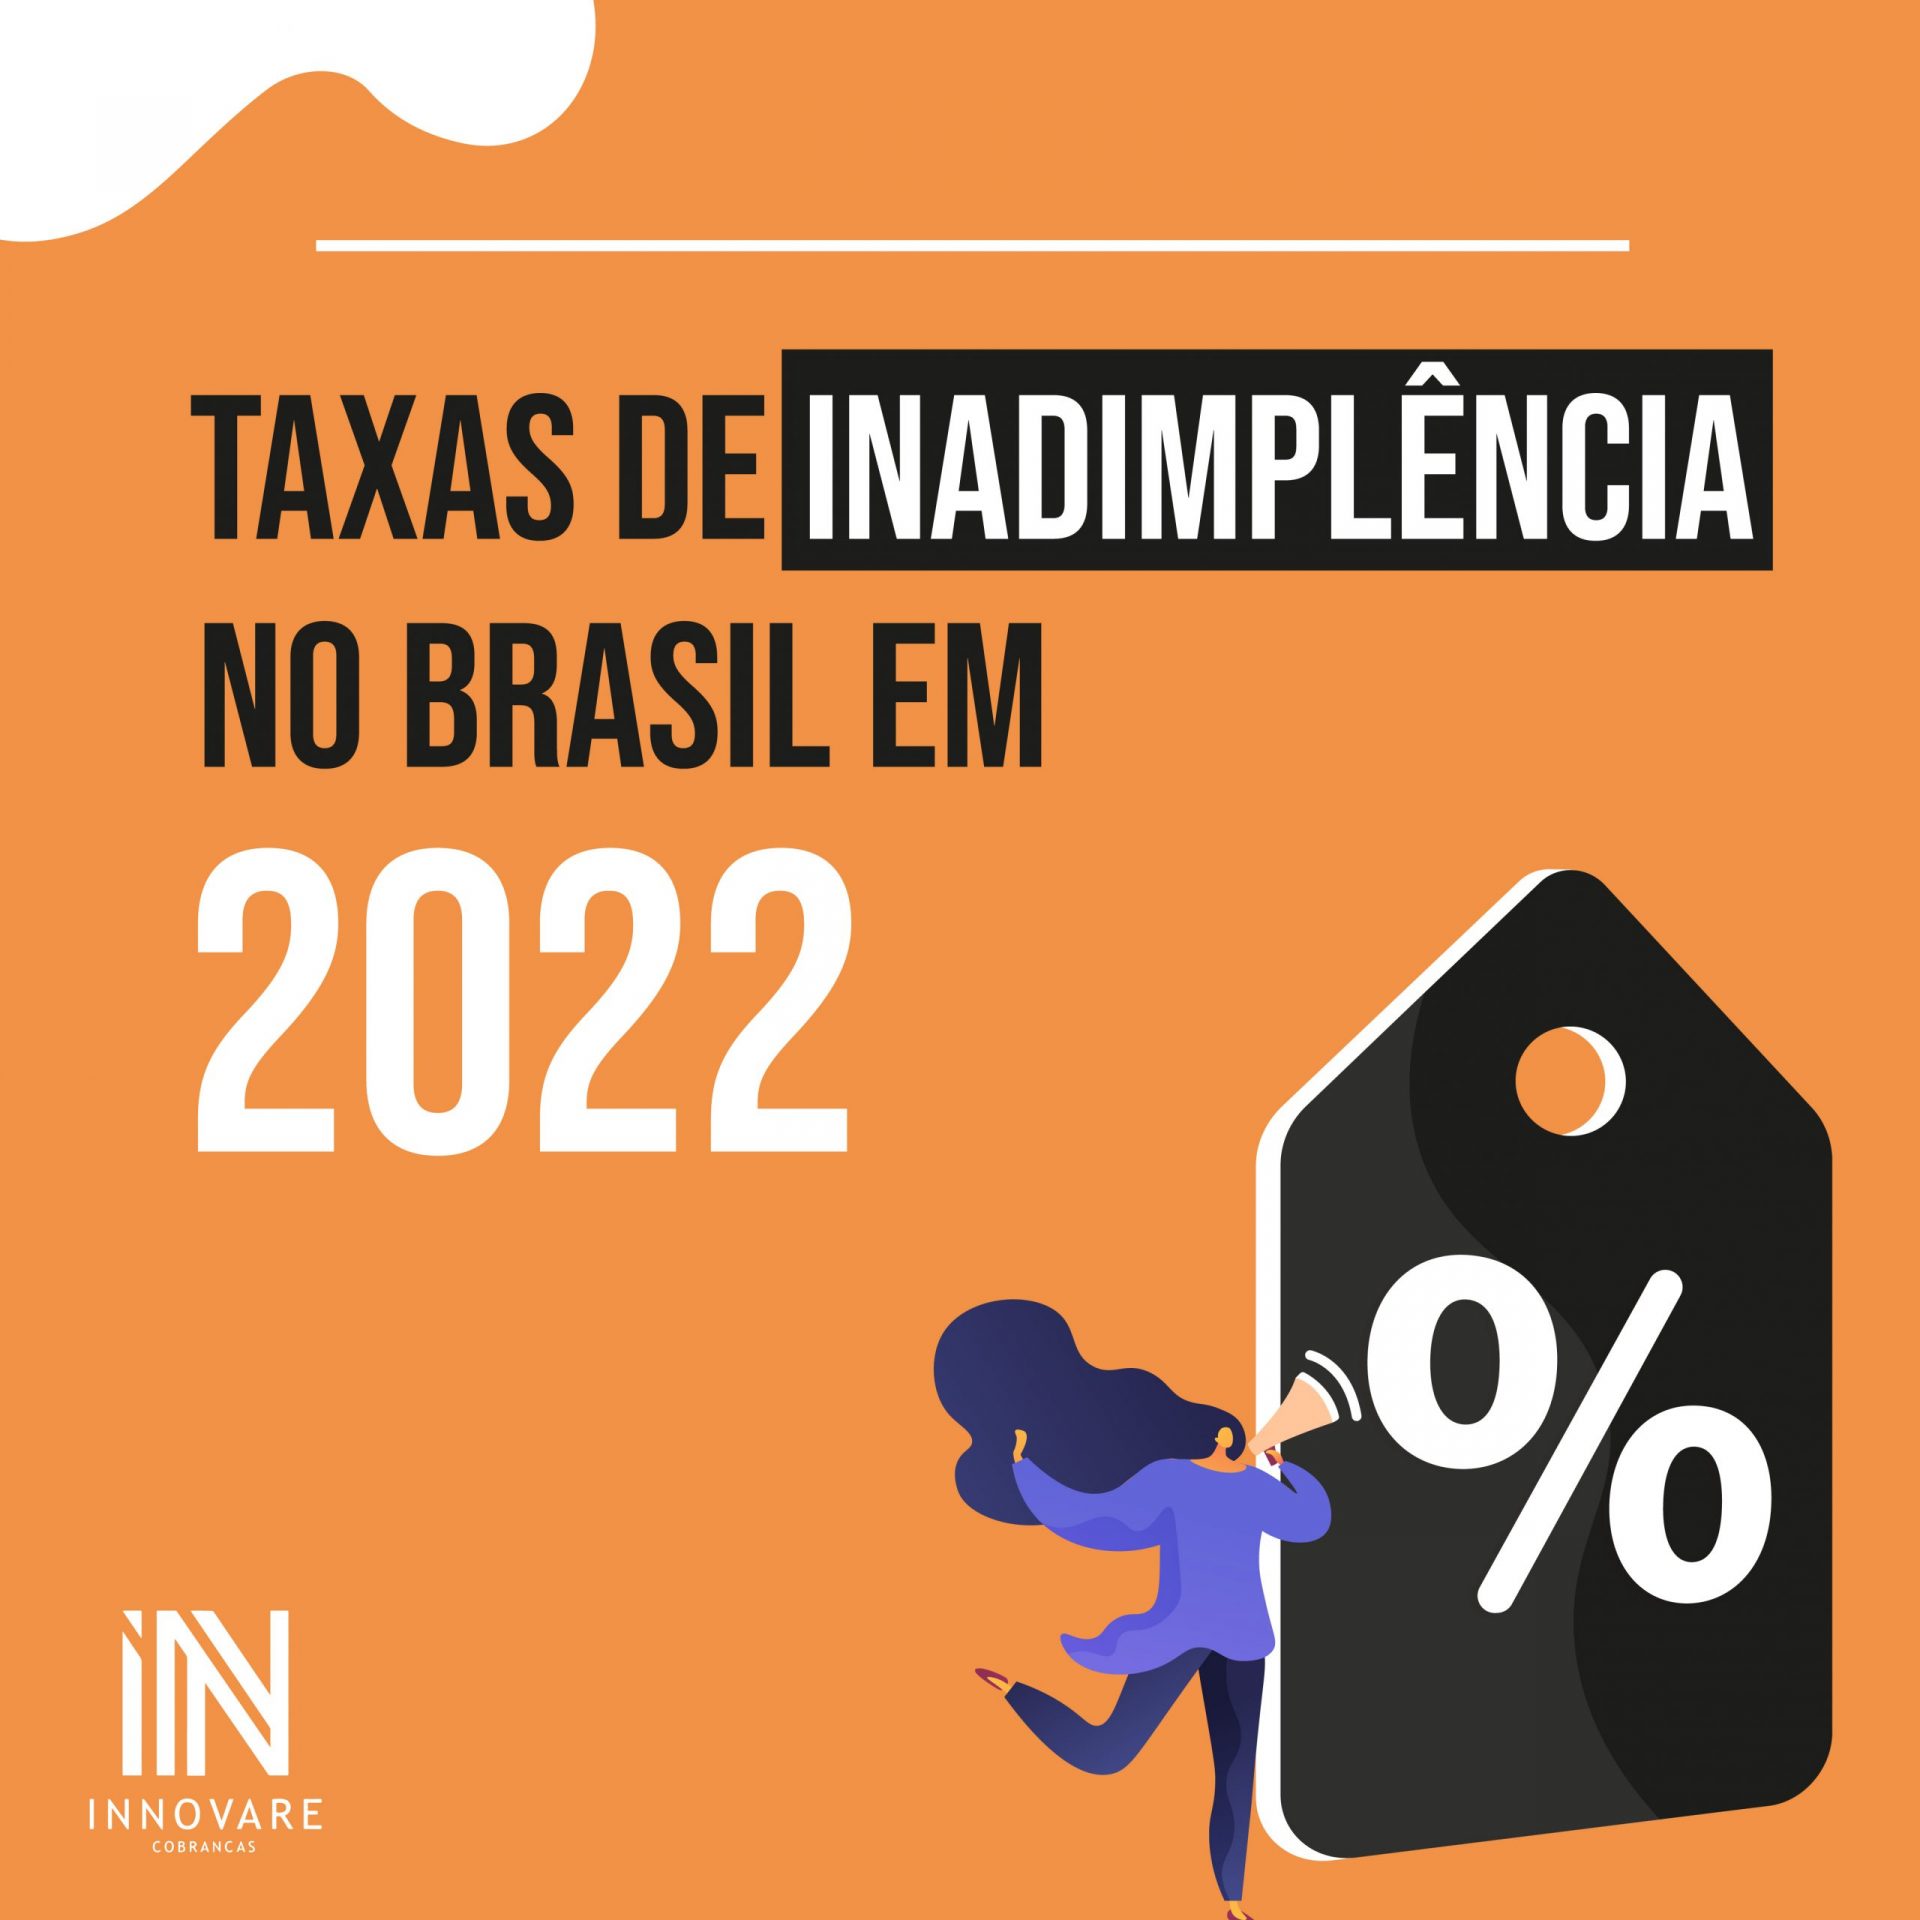 TAXAS DE INADIMPLÊNCIA NO BRASIL EM 2022